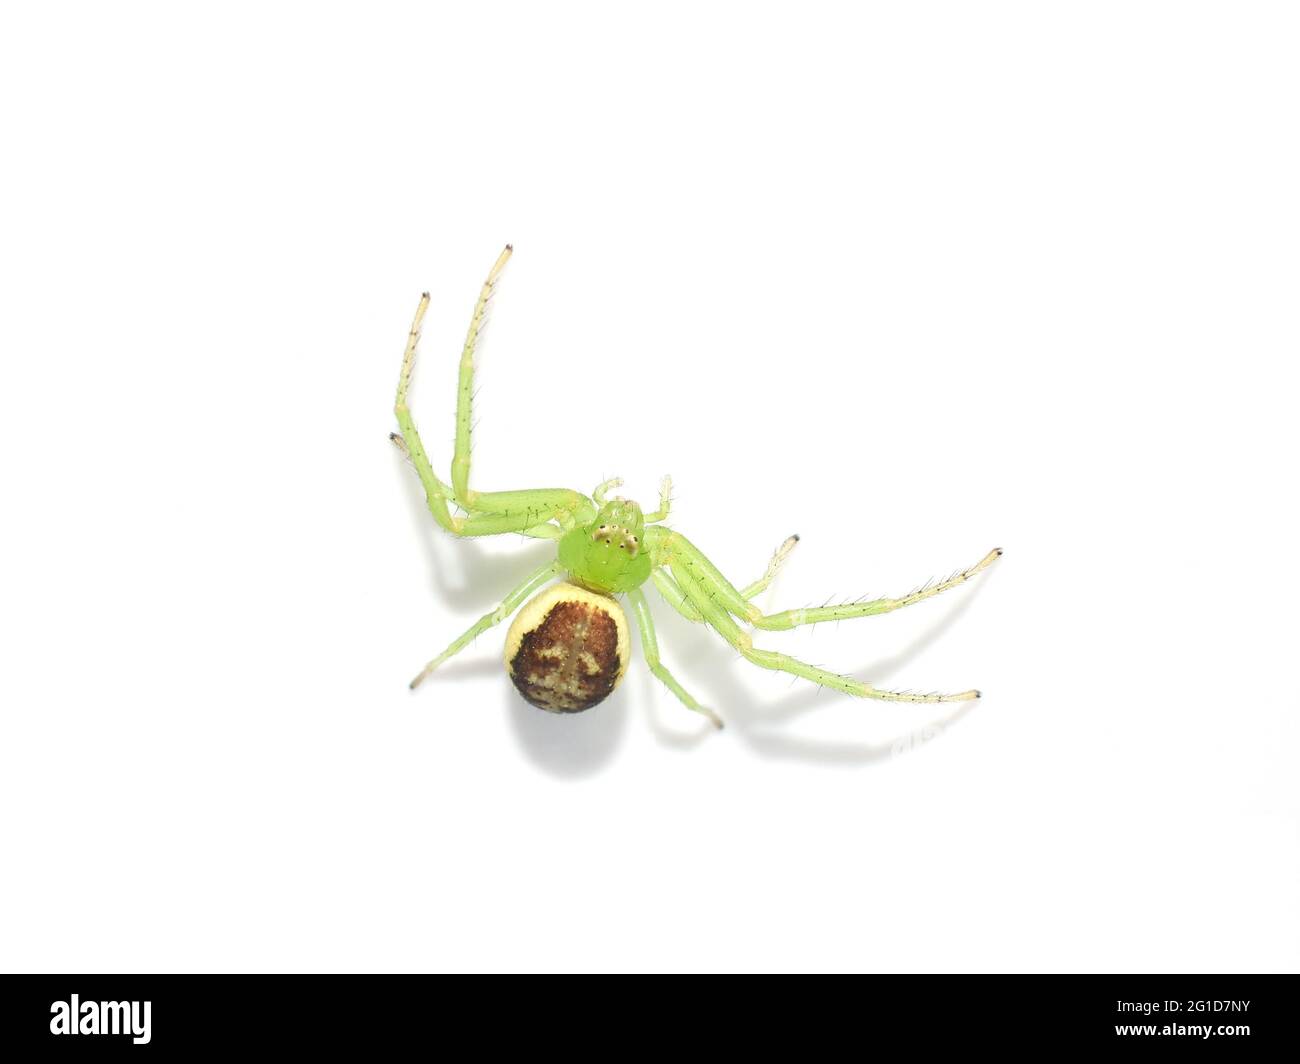 Araignée de crabe vert Diaea dorsata sur fond blanc Banque D'Images